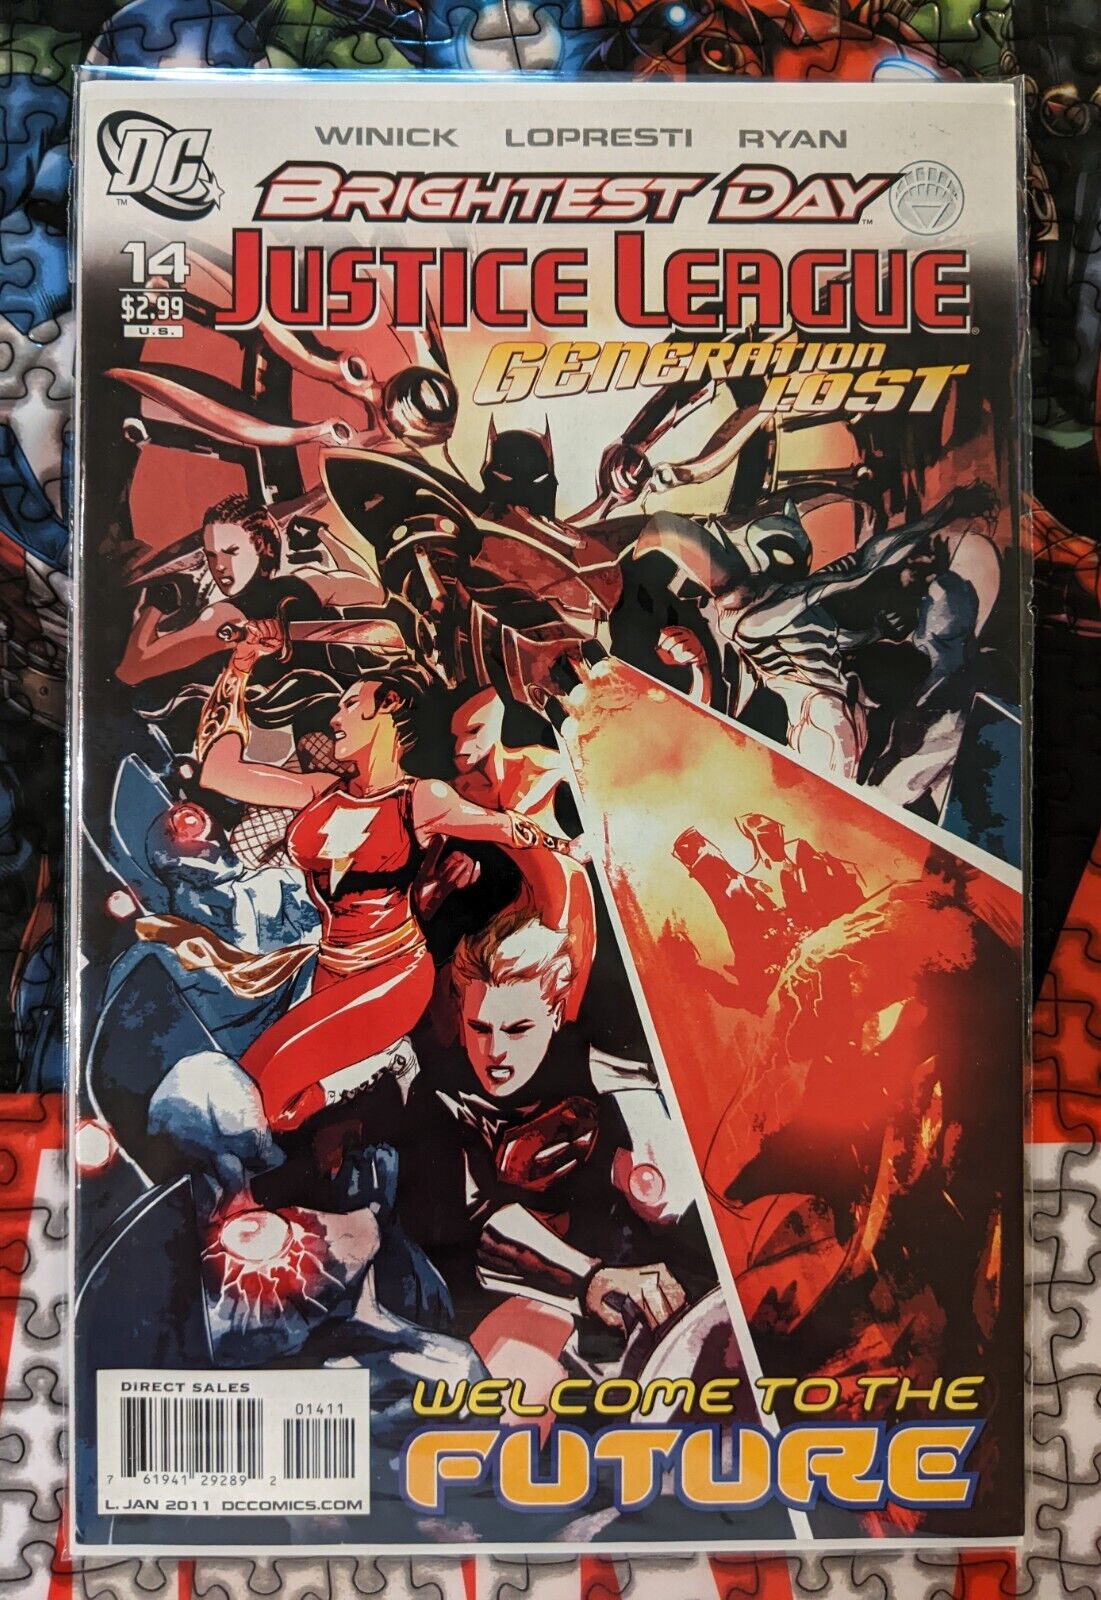 JUSTICE LEAGUE GENERATION LOST #14 BRIGHTEST DAY 2011 DC COMICS (24E)